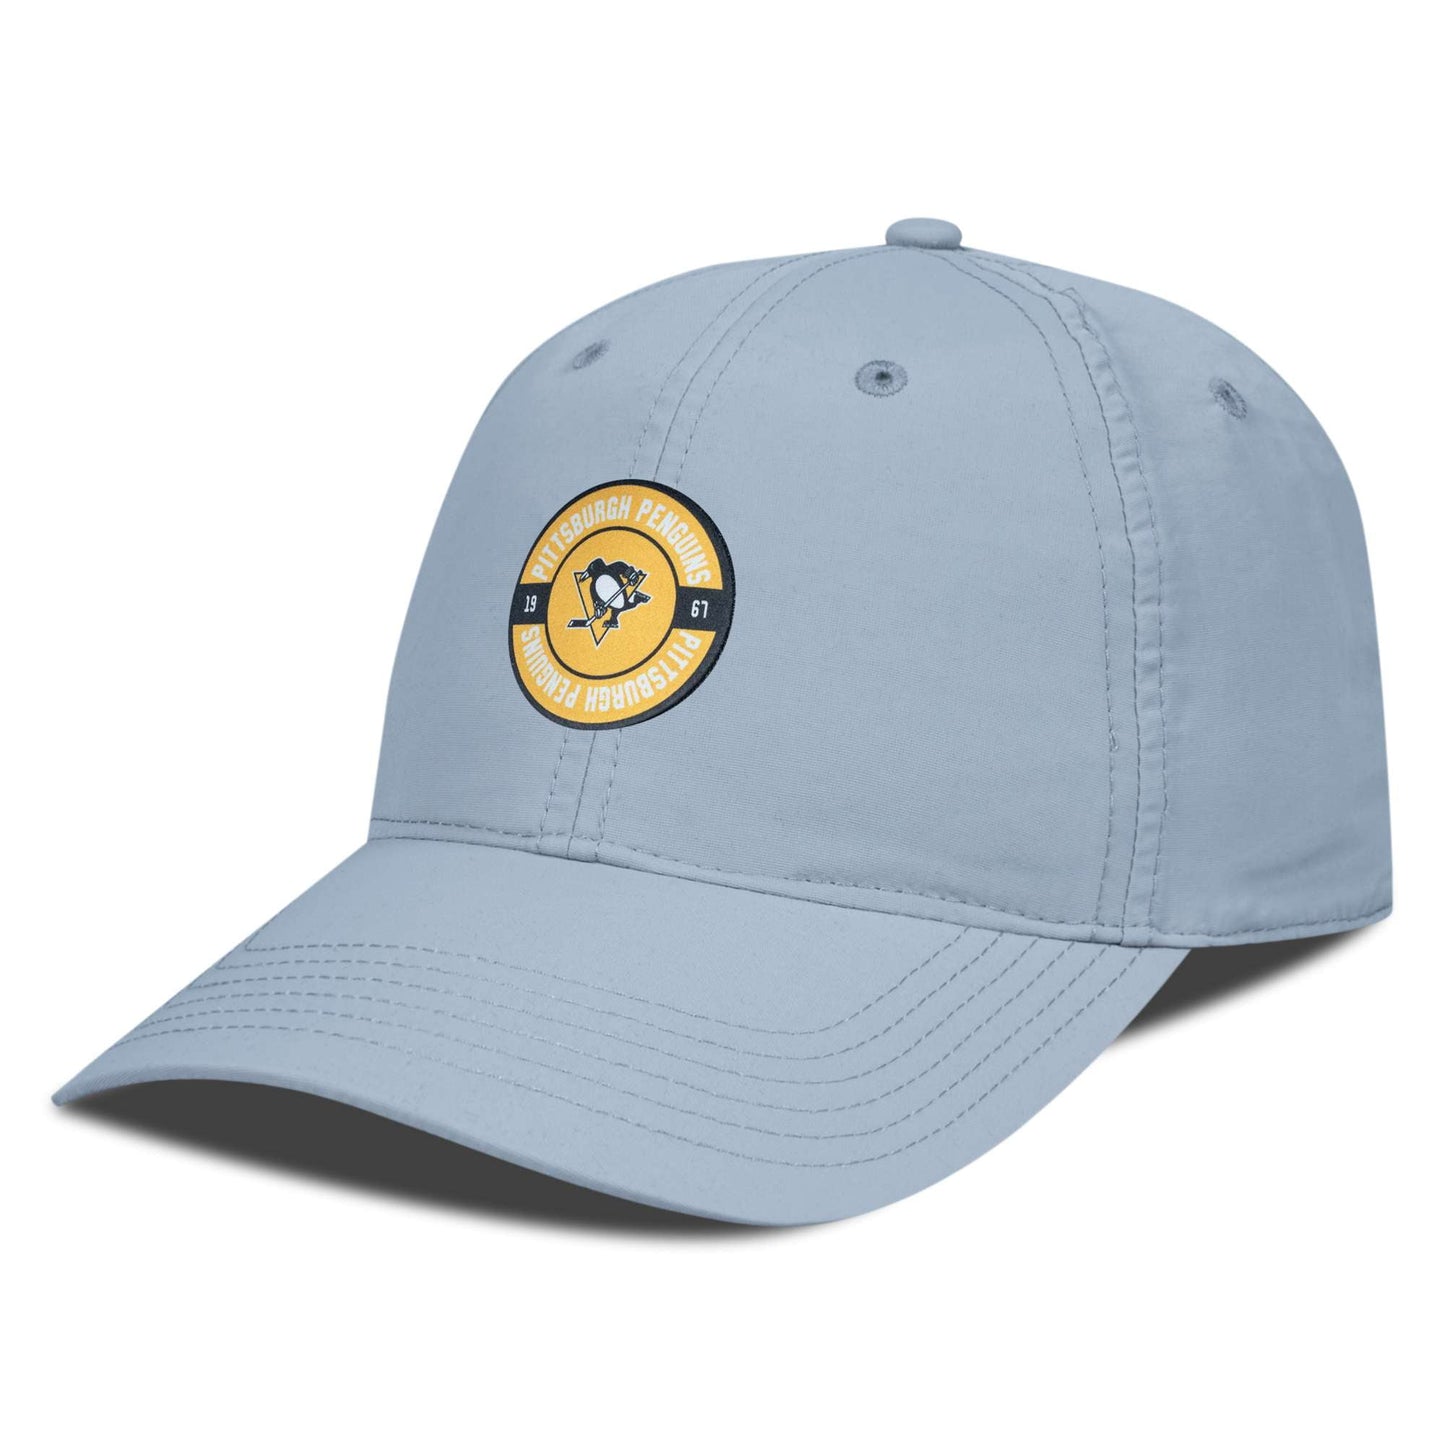 Men's Levelwear Gray Pittsburgh Penguins Crest Adjustable Hat - OSFA